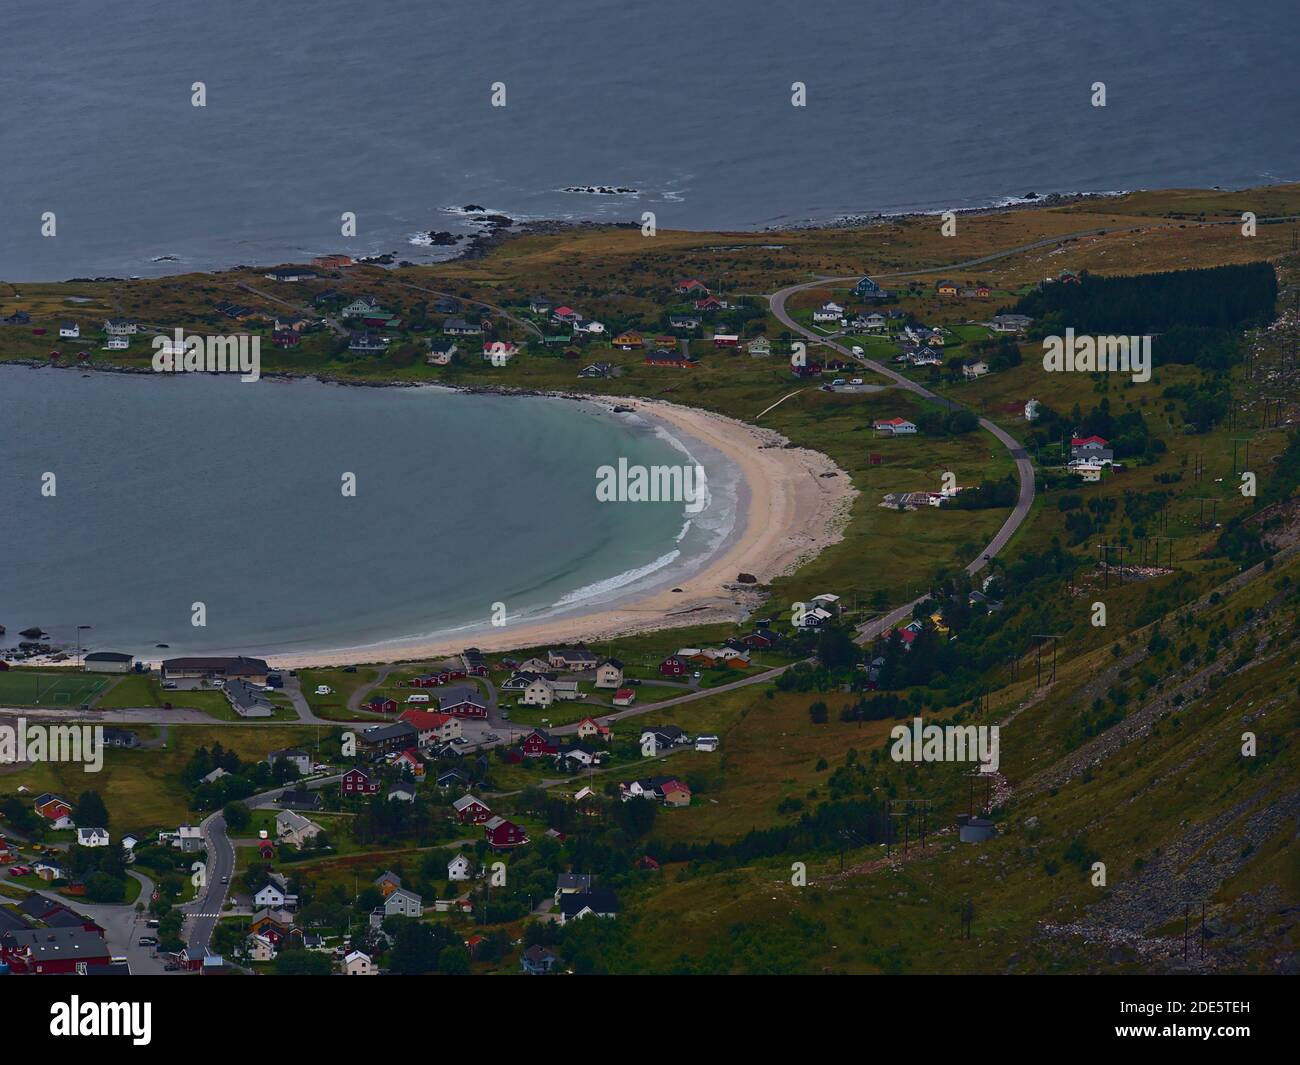 Ramberg, Moskenesøy, Lofoten, Norvegia - 08-31-2020: Veduta aerea della bellissima spiaggia sabbiosa di Ramberg, meta turistica popolare sulle isole Lofoten. Foto Stock